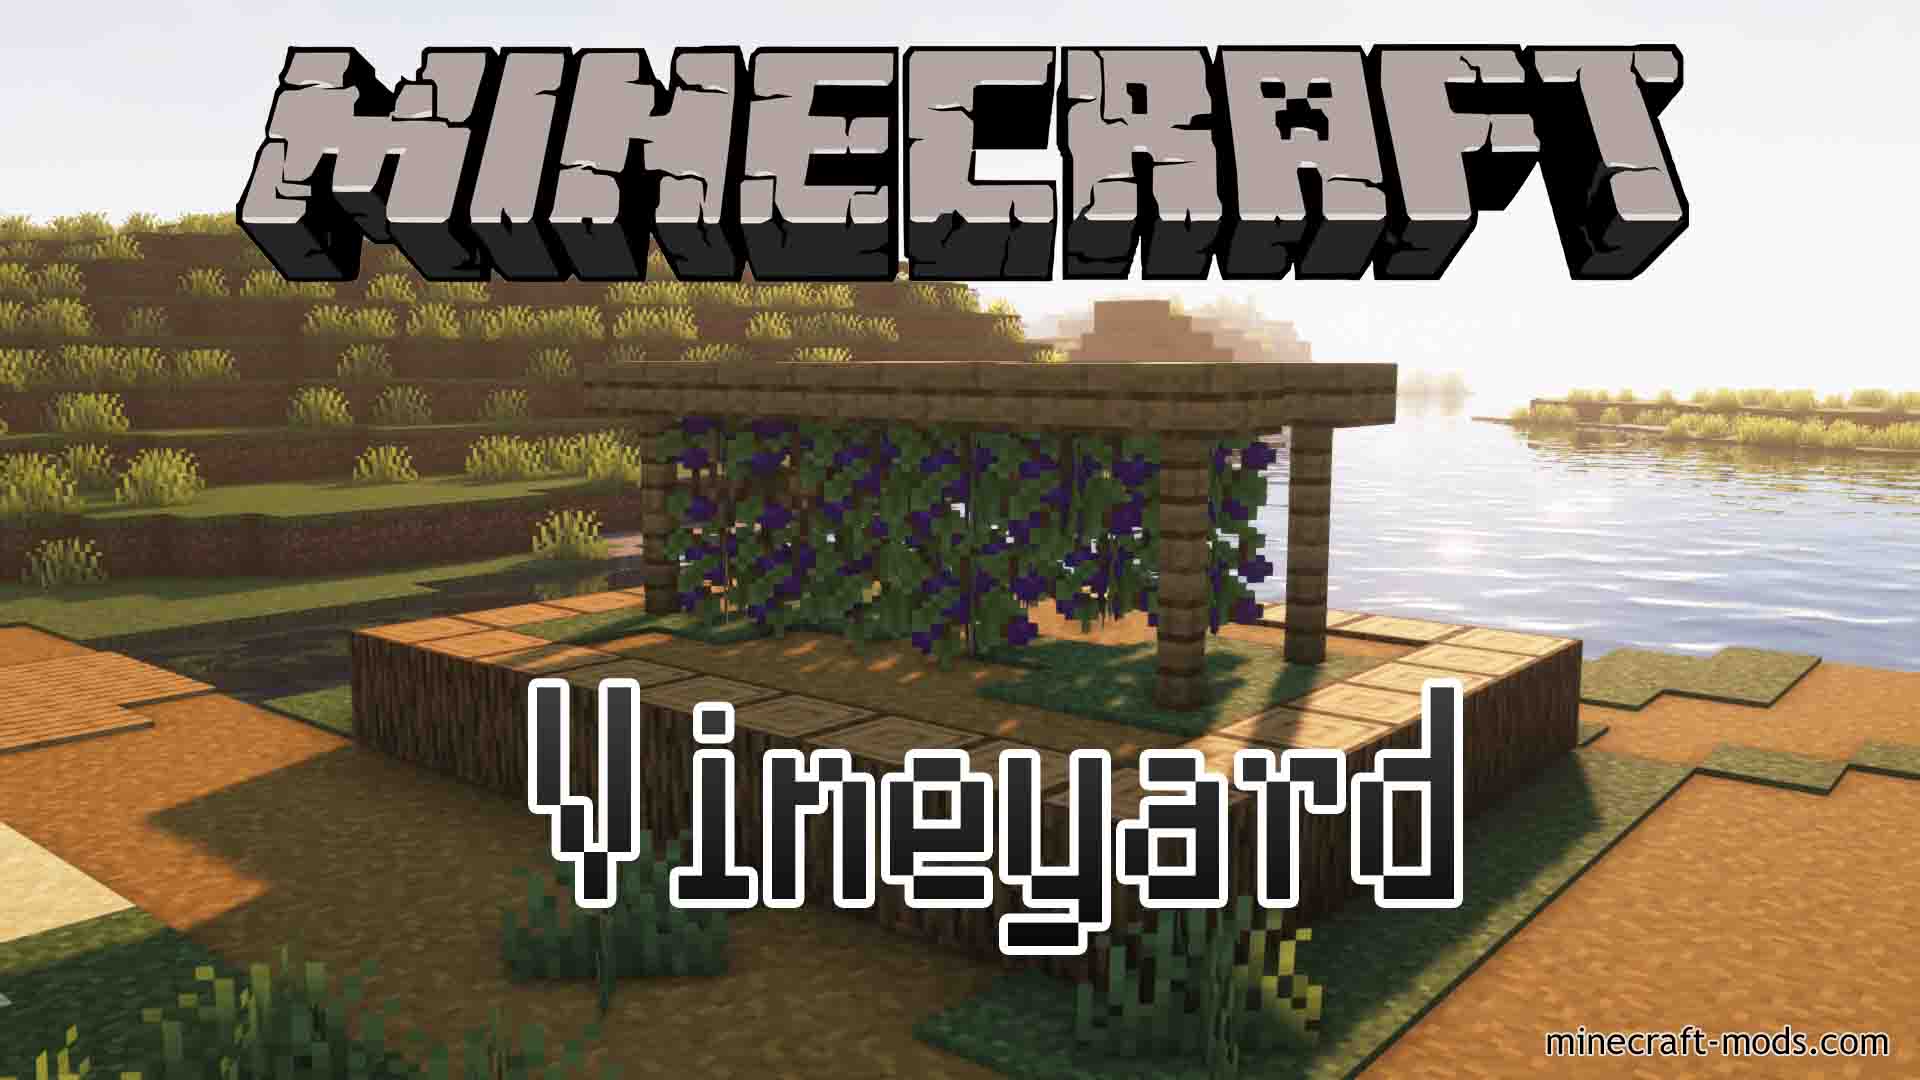 Vineyard mod - Minecraft Mods